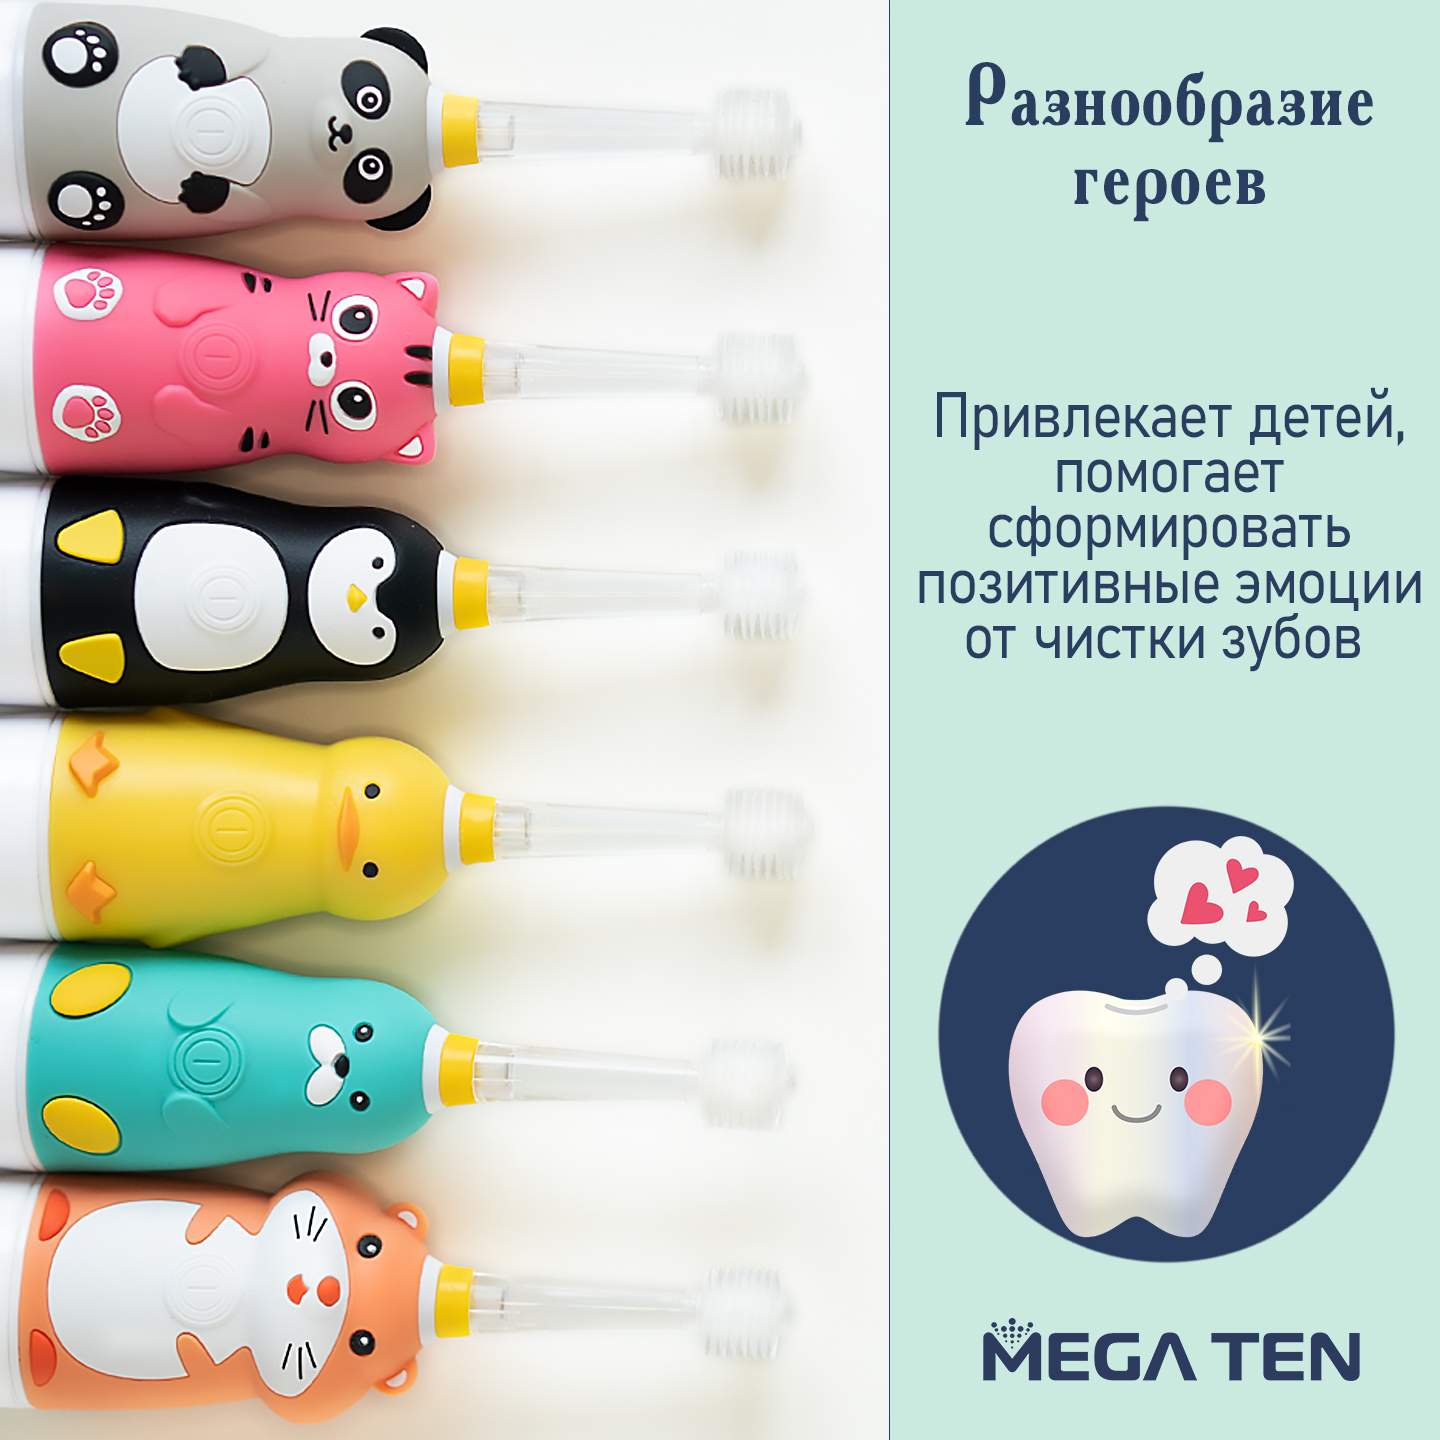 Электрическая зубная щетка MEGA TEN Kids Sonic Совушка